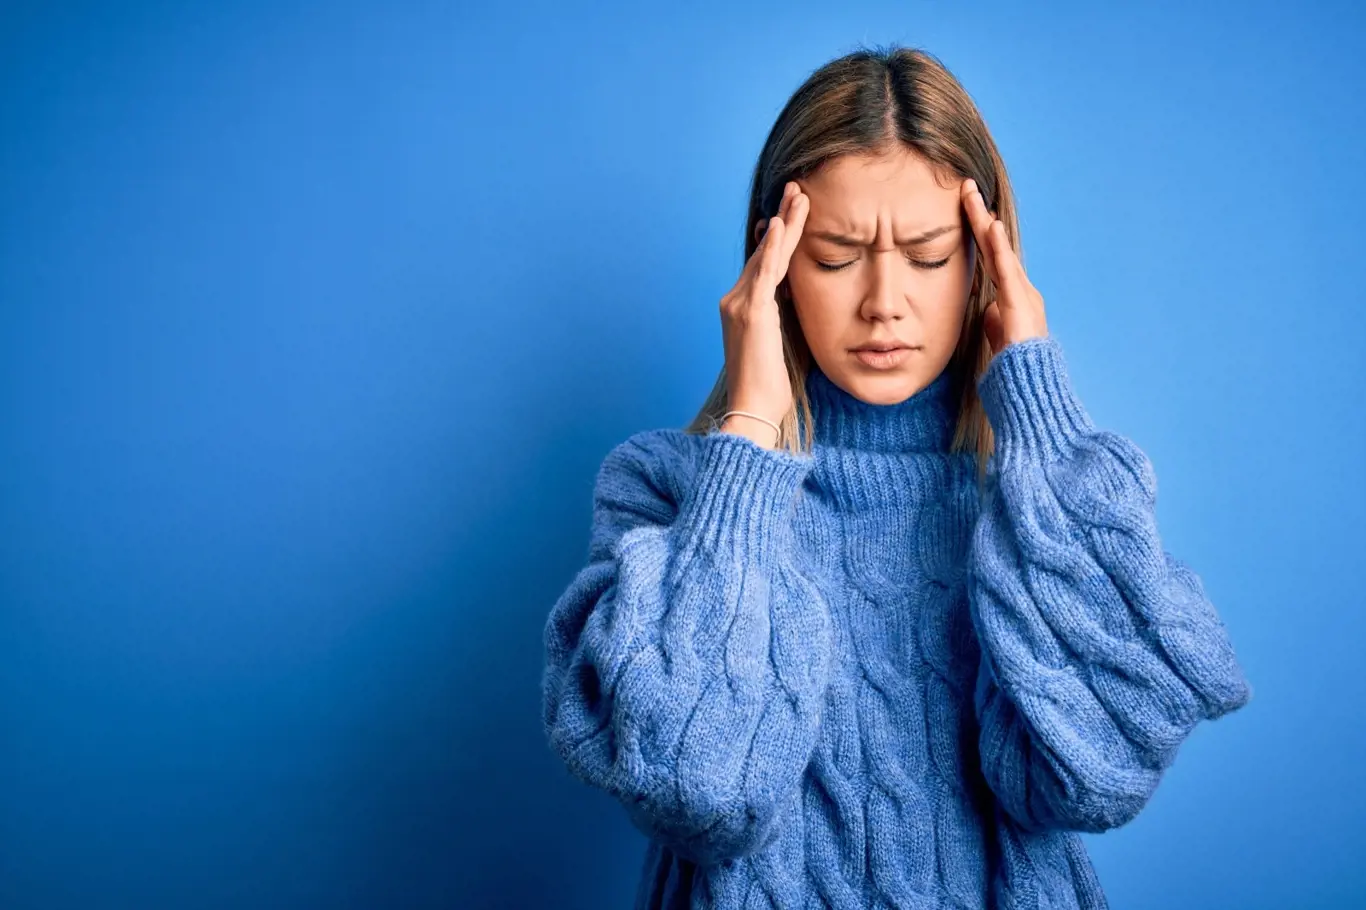 Bolest hlavy popisují lidé jako jednu z nejnepříjemnějších bolestí vůbec